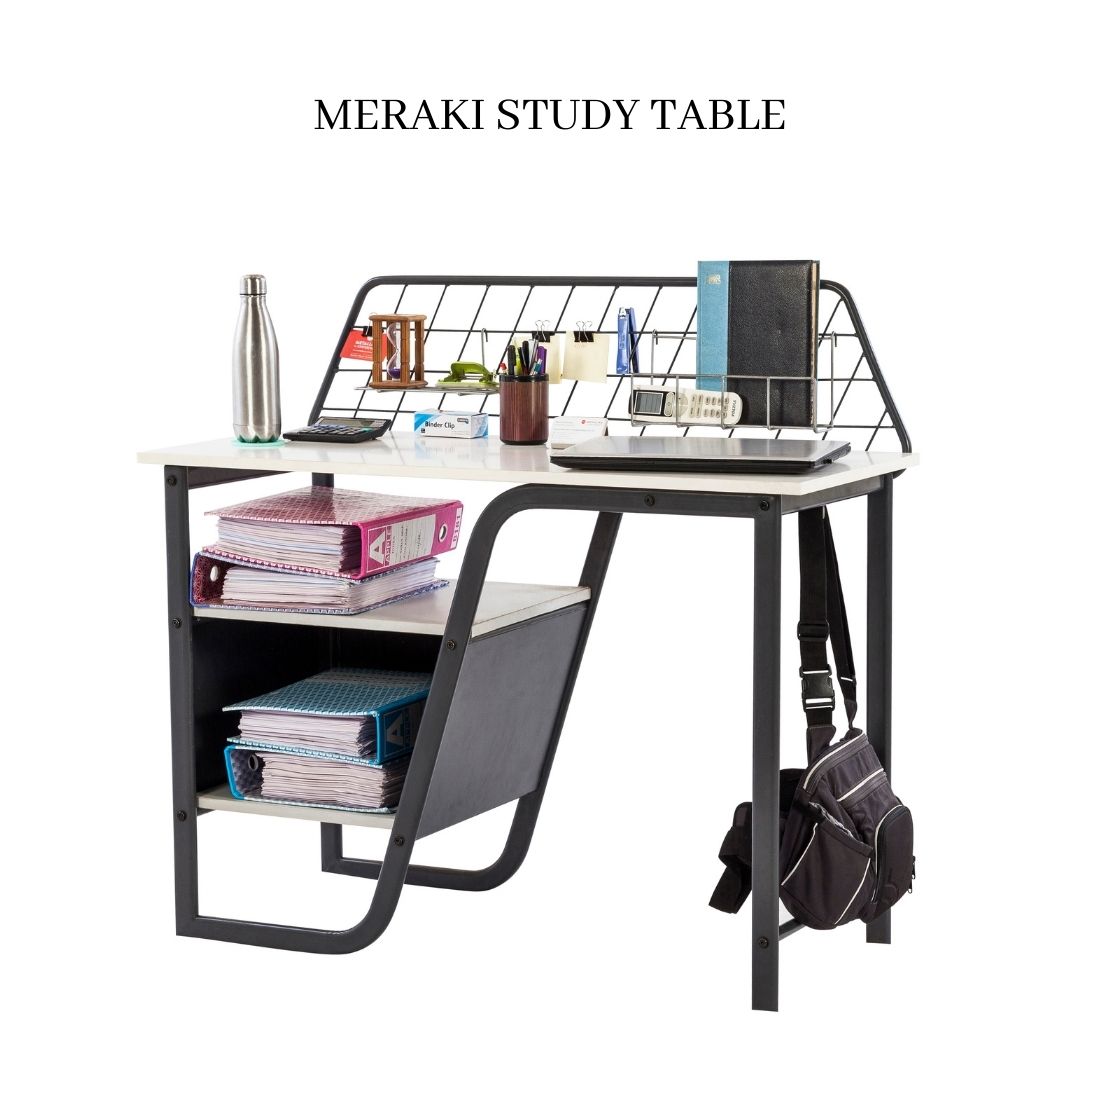 Meraki Study Table - metallikafurniture.com